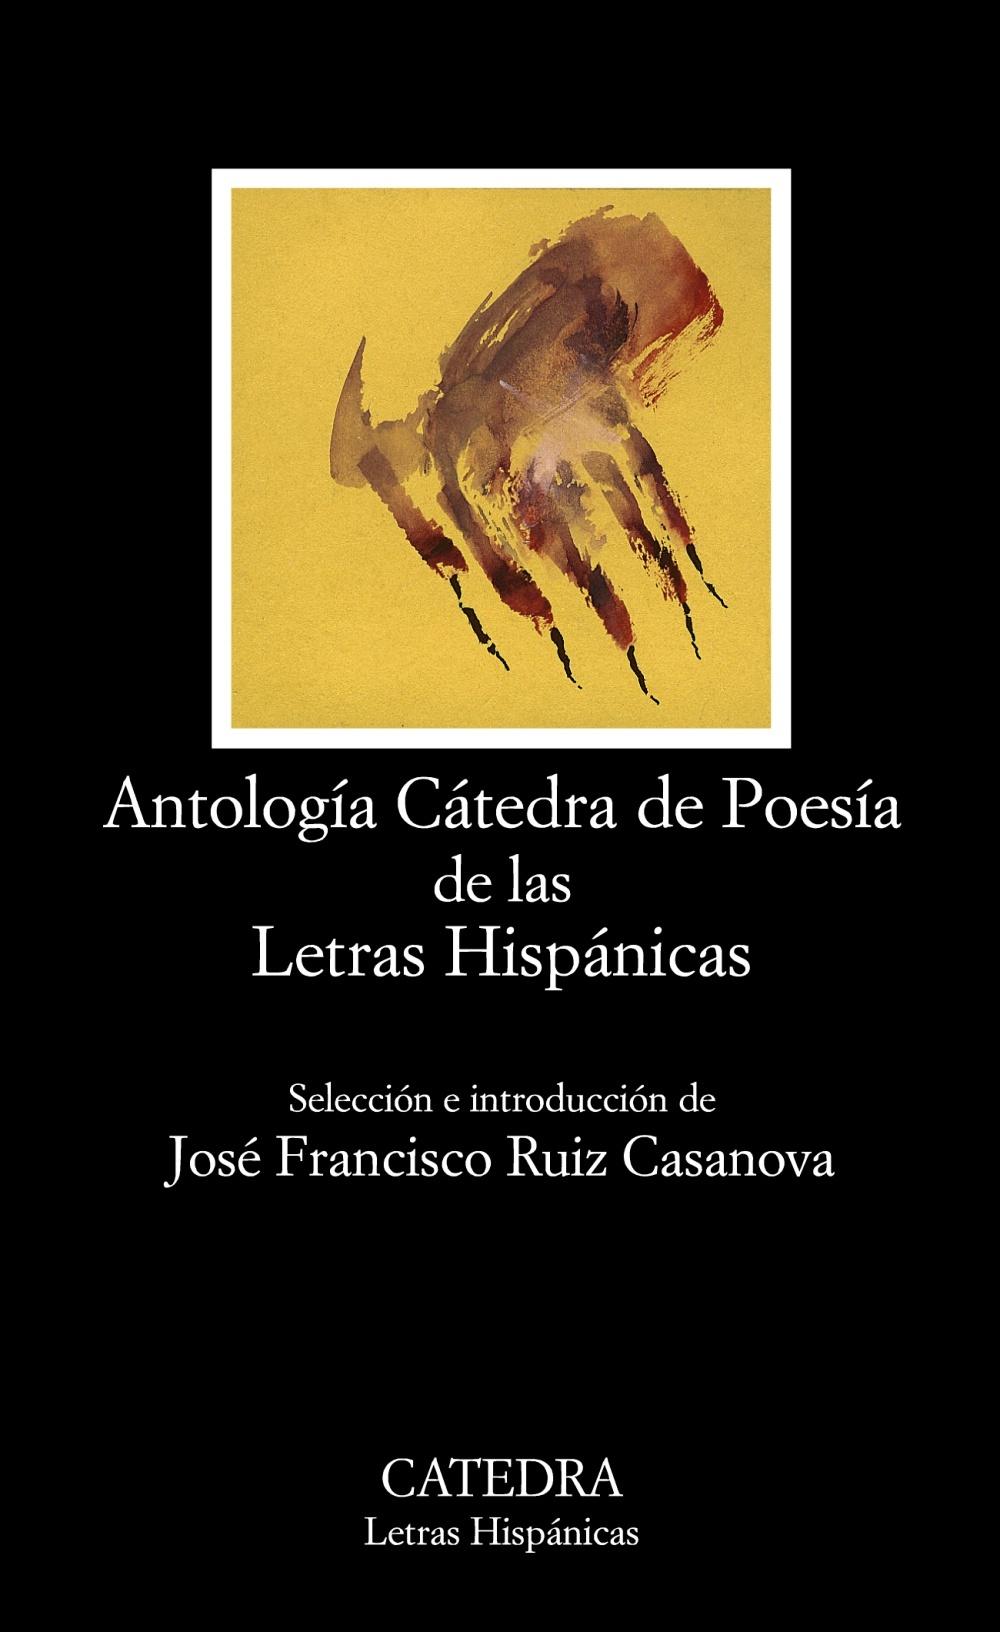 Foto Antología Cátedra de Poesía de las Letras Hispánicas foto 65313